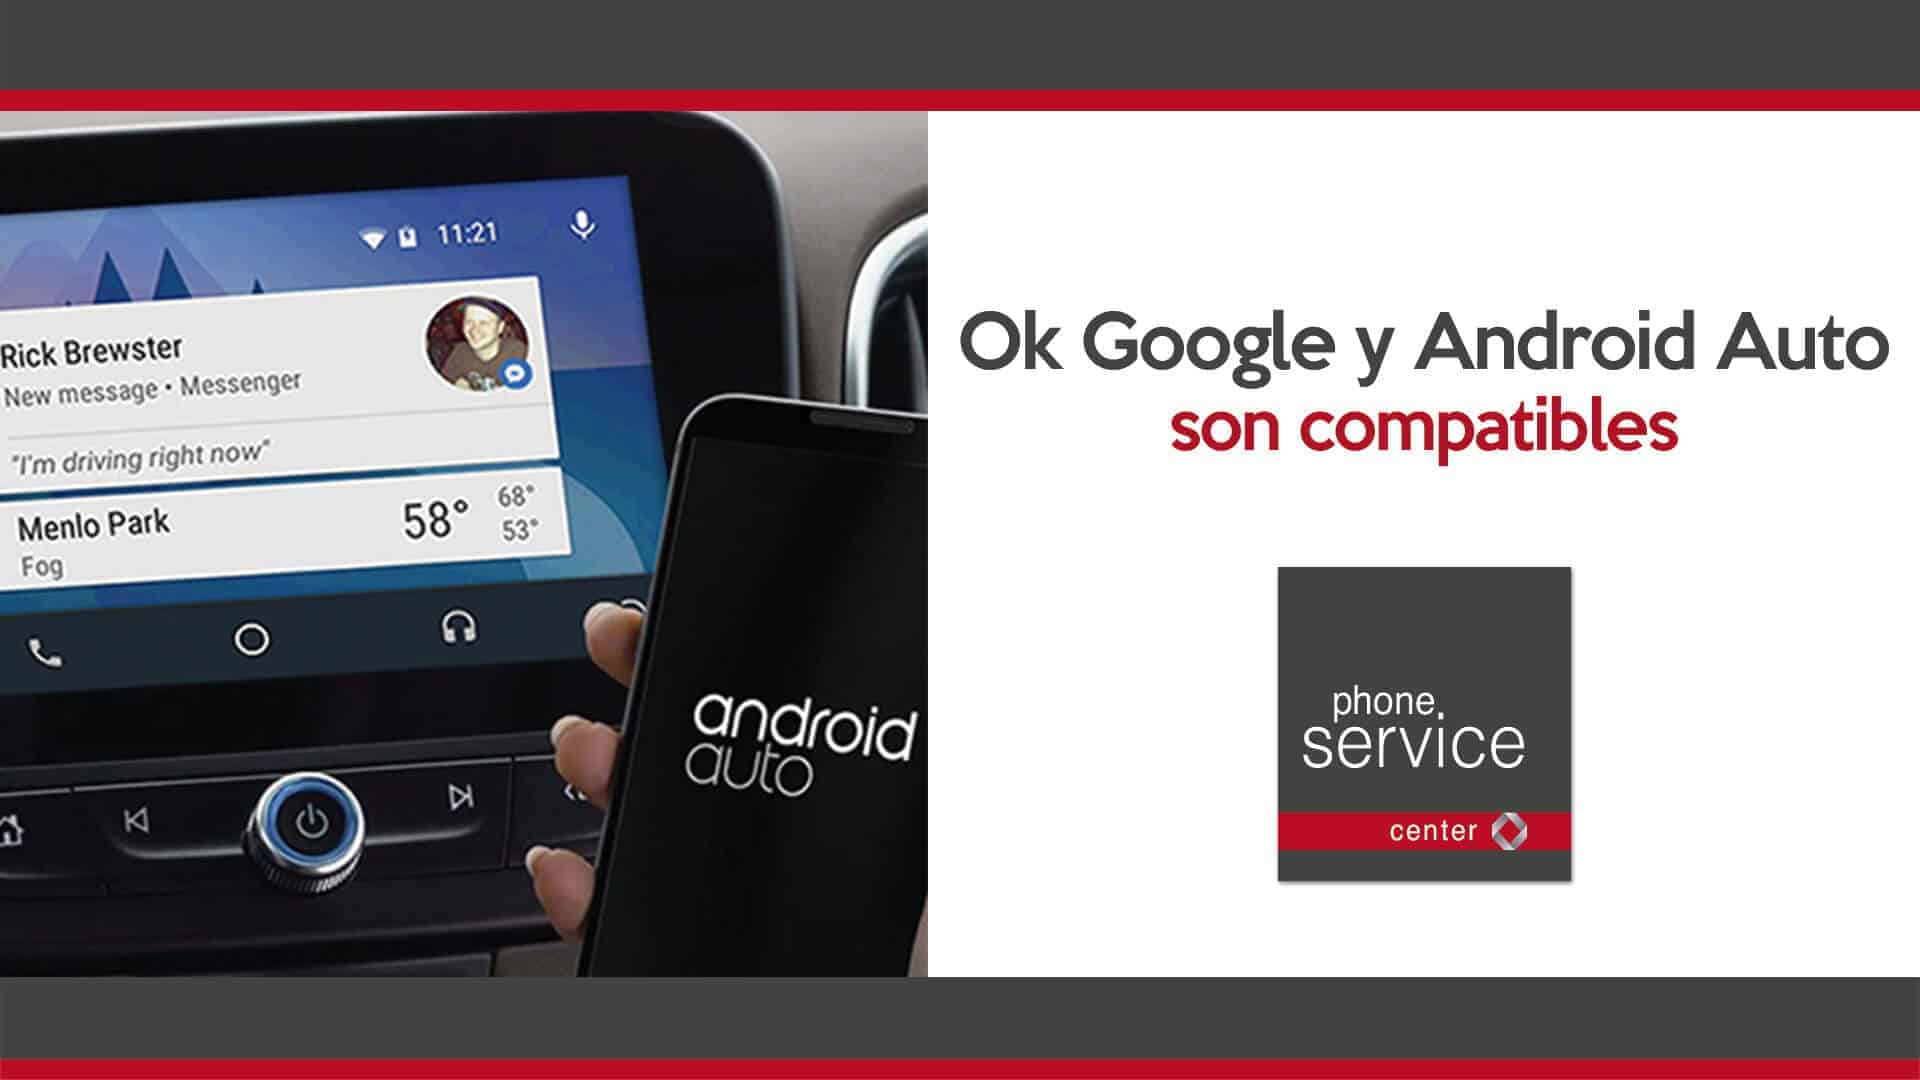 Ok Google y Android Auto son compatibles